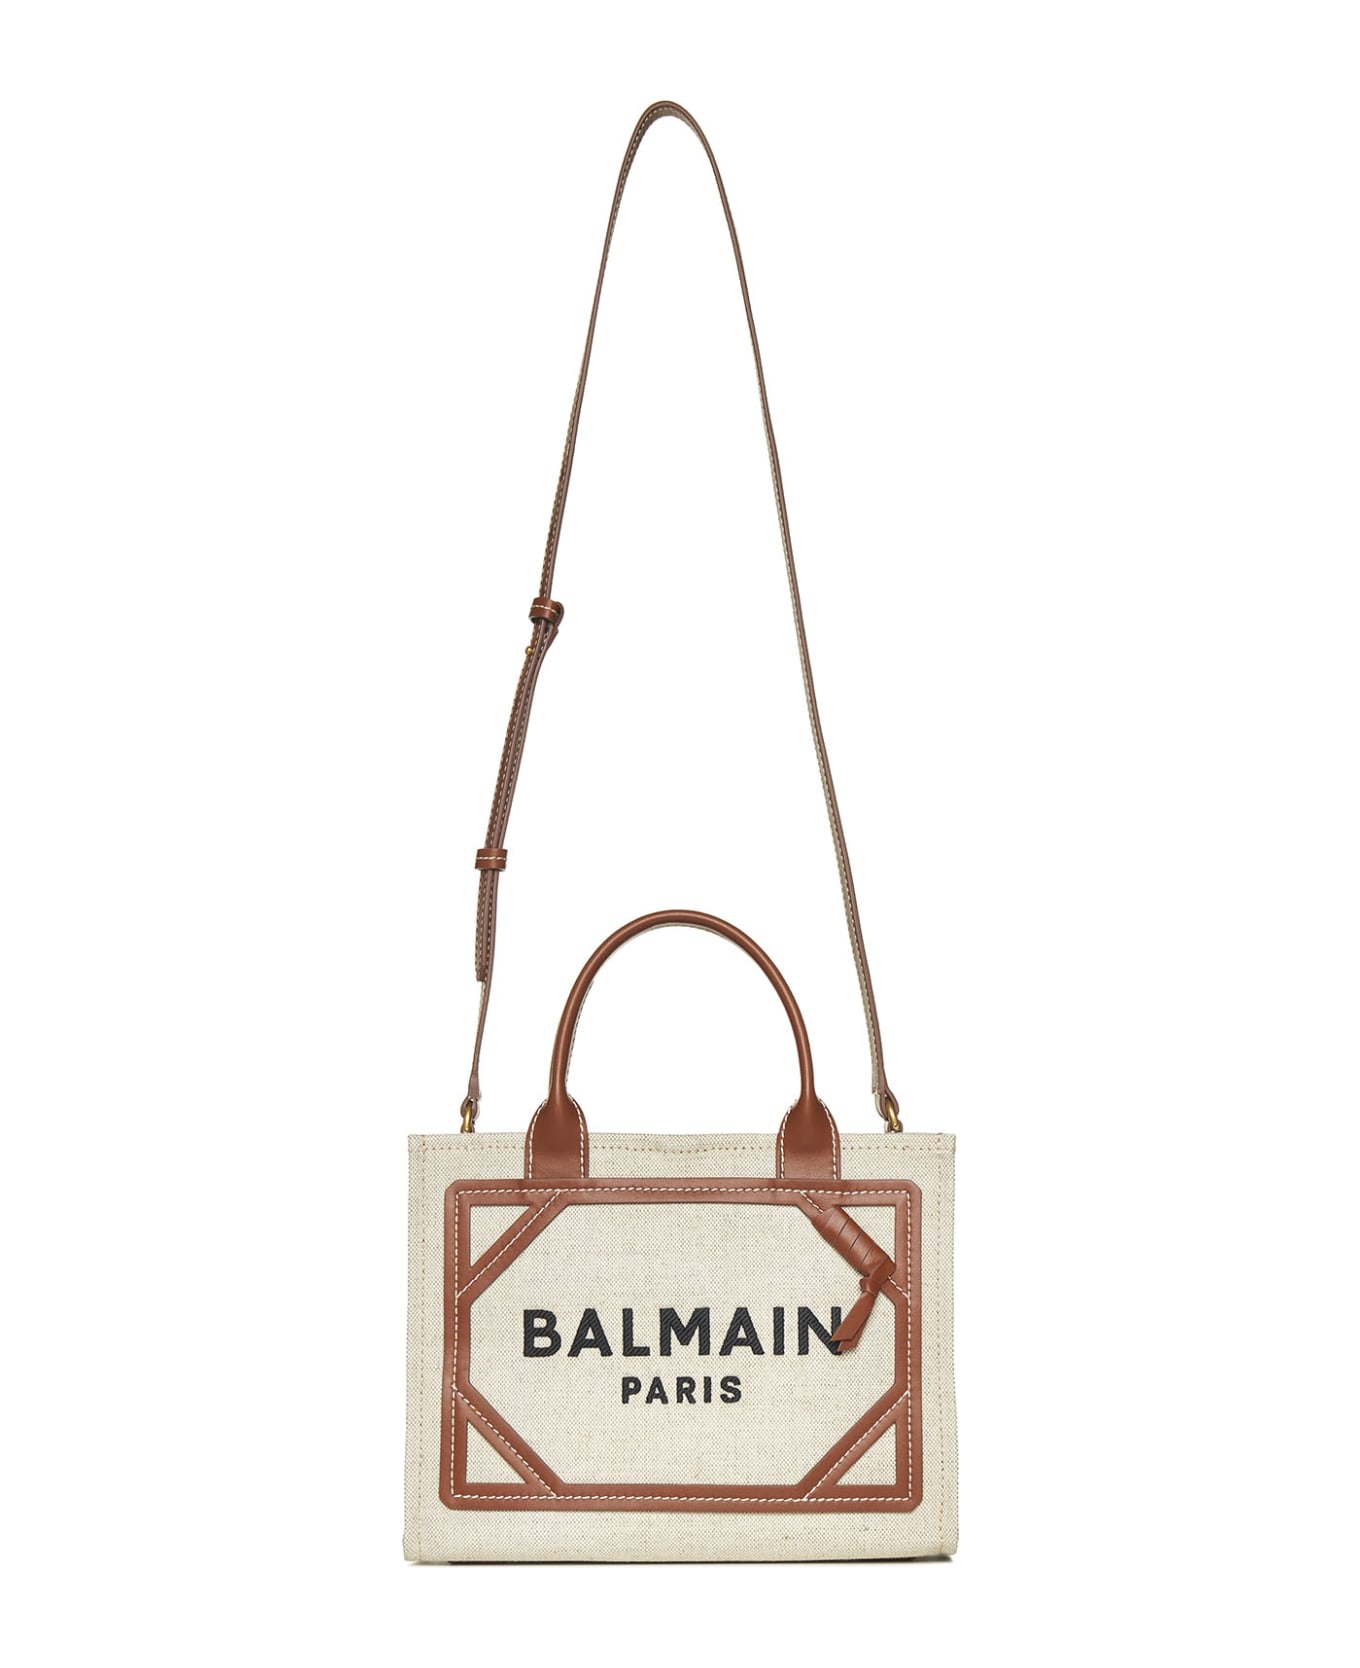 Balmain B-army Small Shopper Bag - Cream